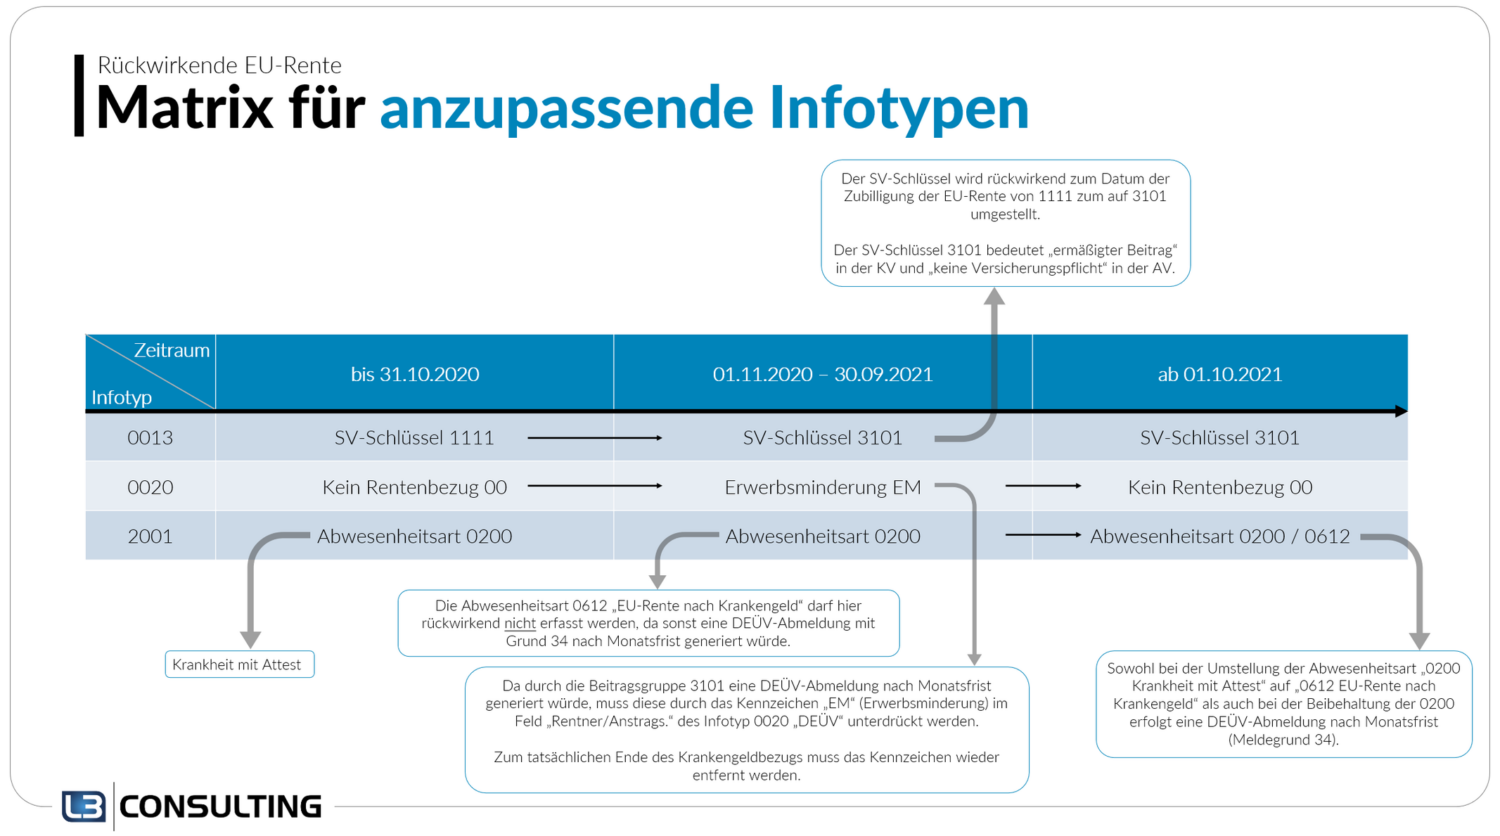 Anzupassende Infotypen bei rückwirkender EU-Rente im SAP HCM